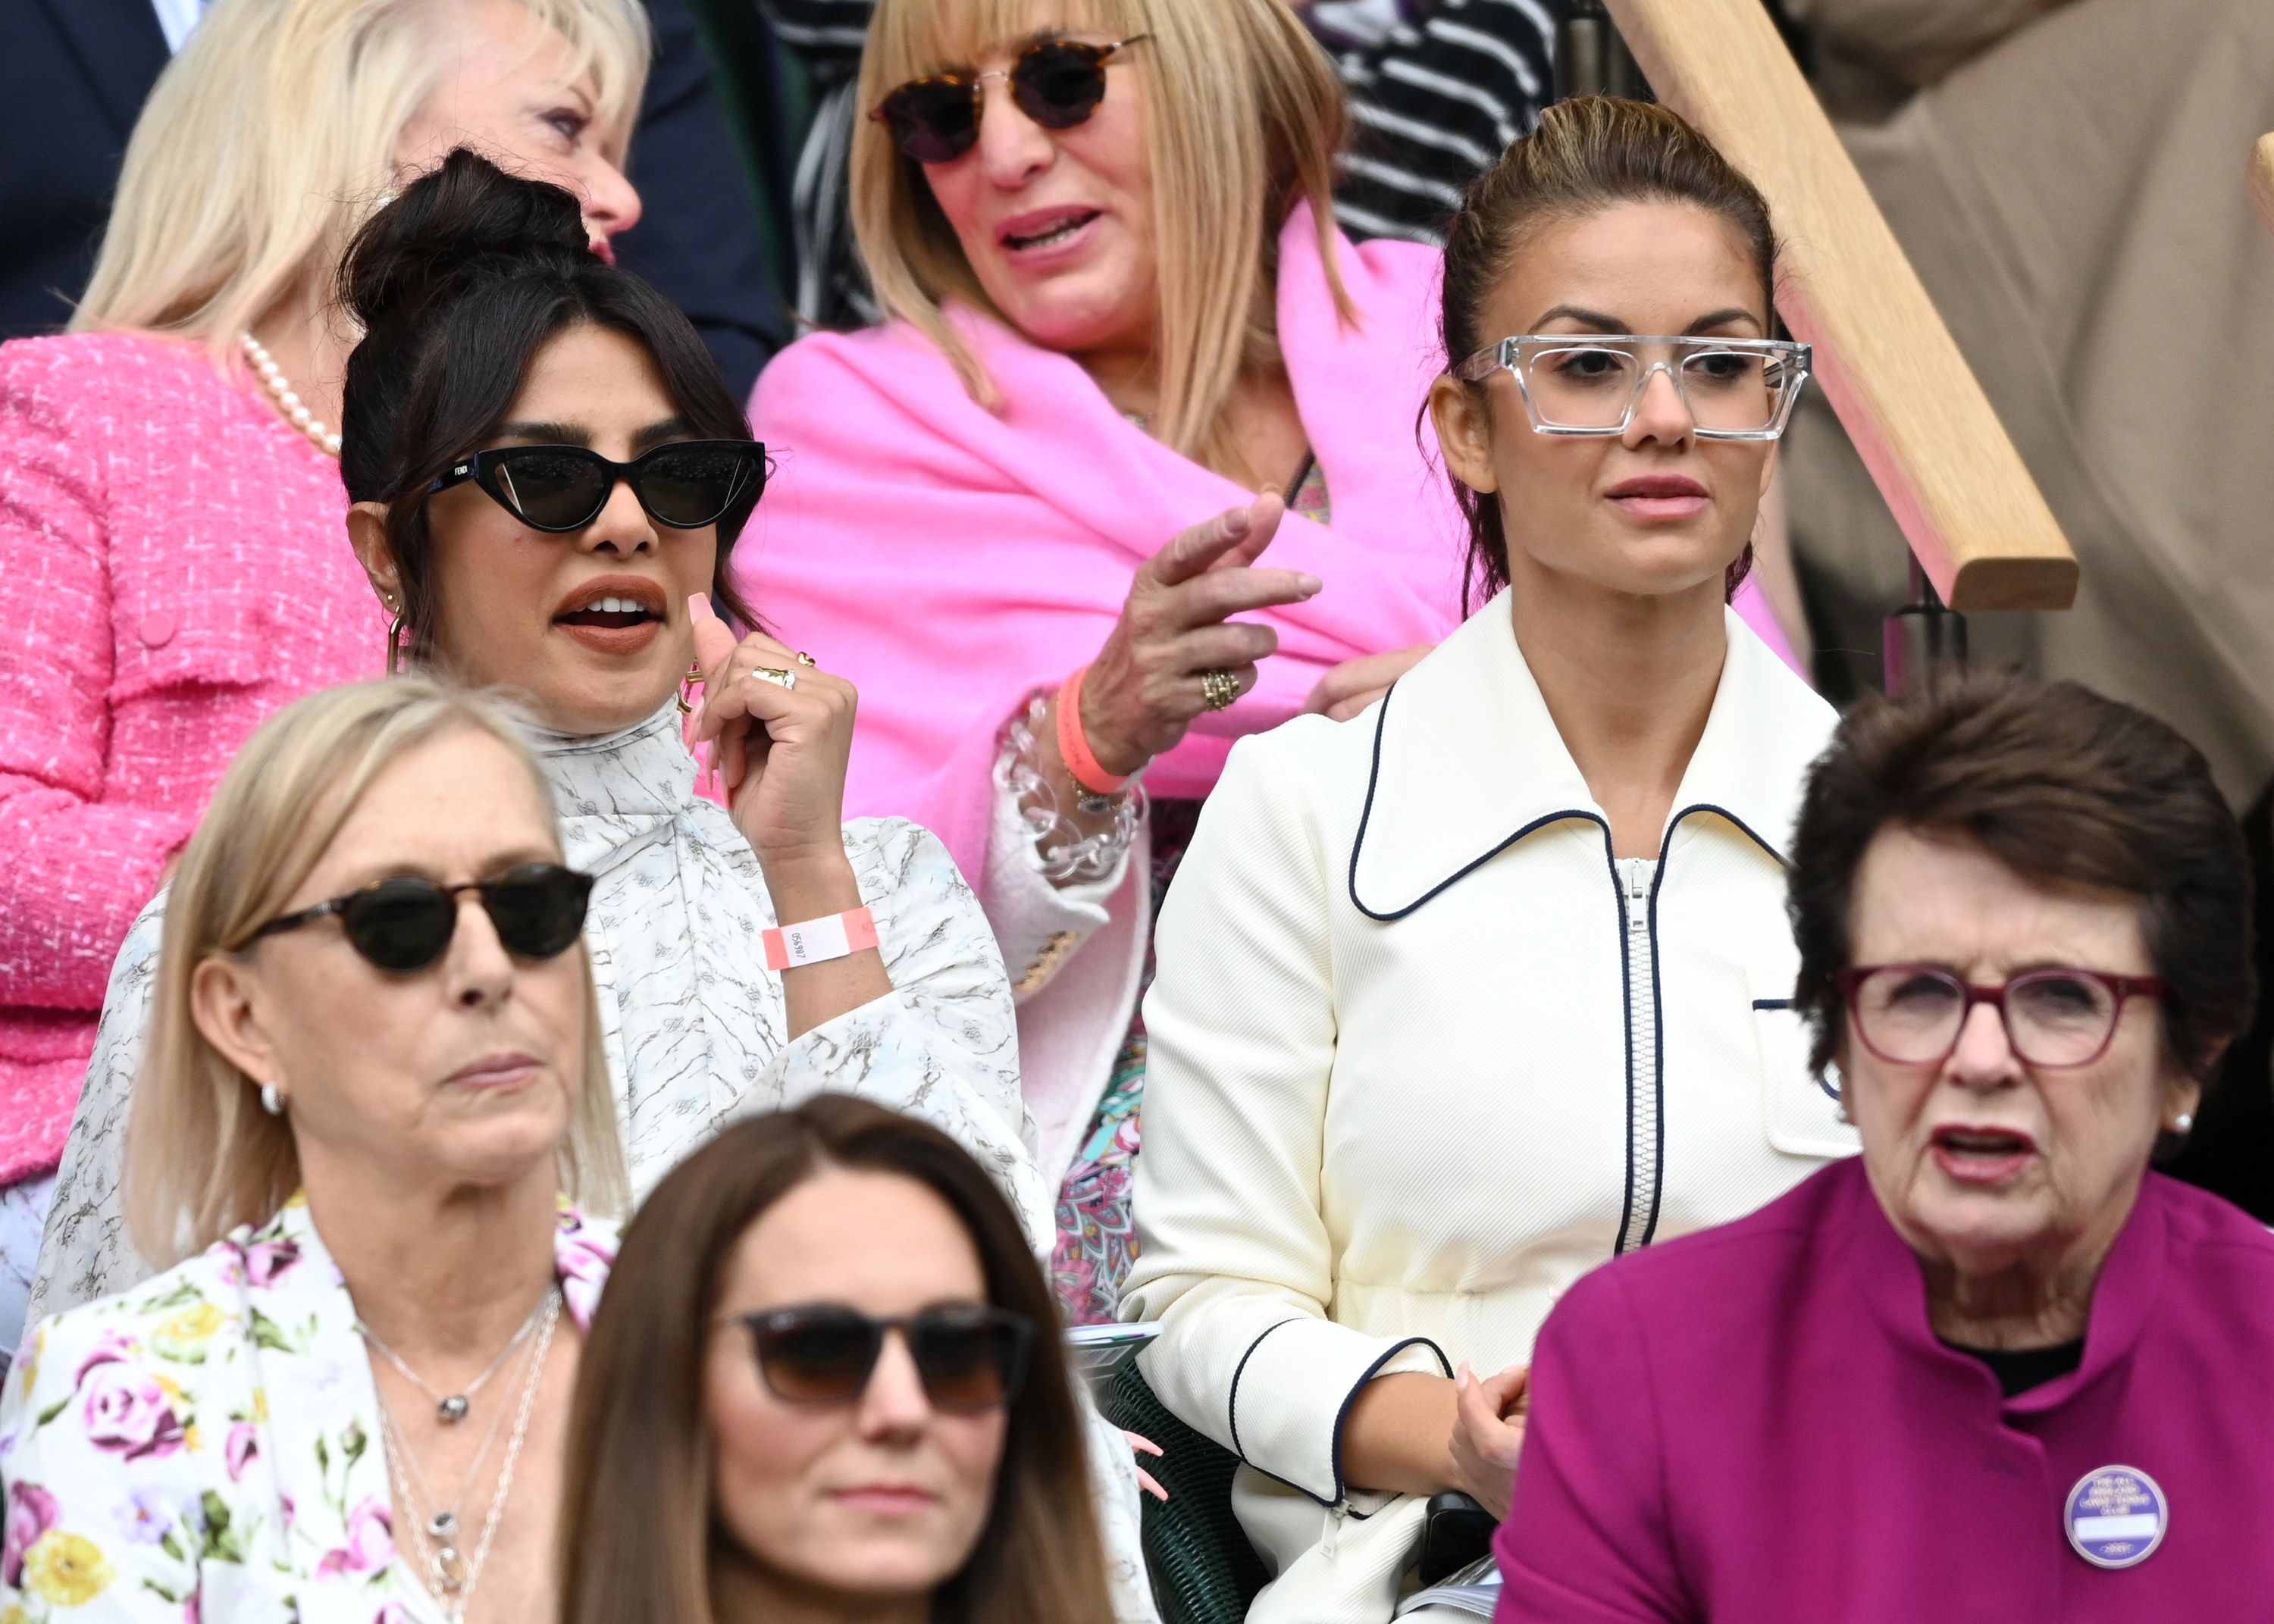 普利艳卡和凯特•米德尔顿在温布尔登网球公开赛中拍摄女性# x27;年代最后的周六